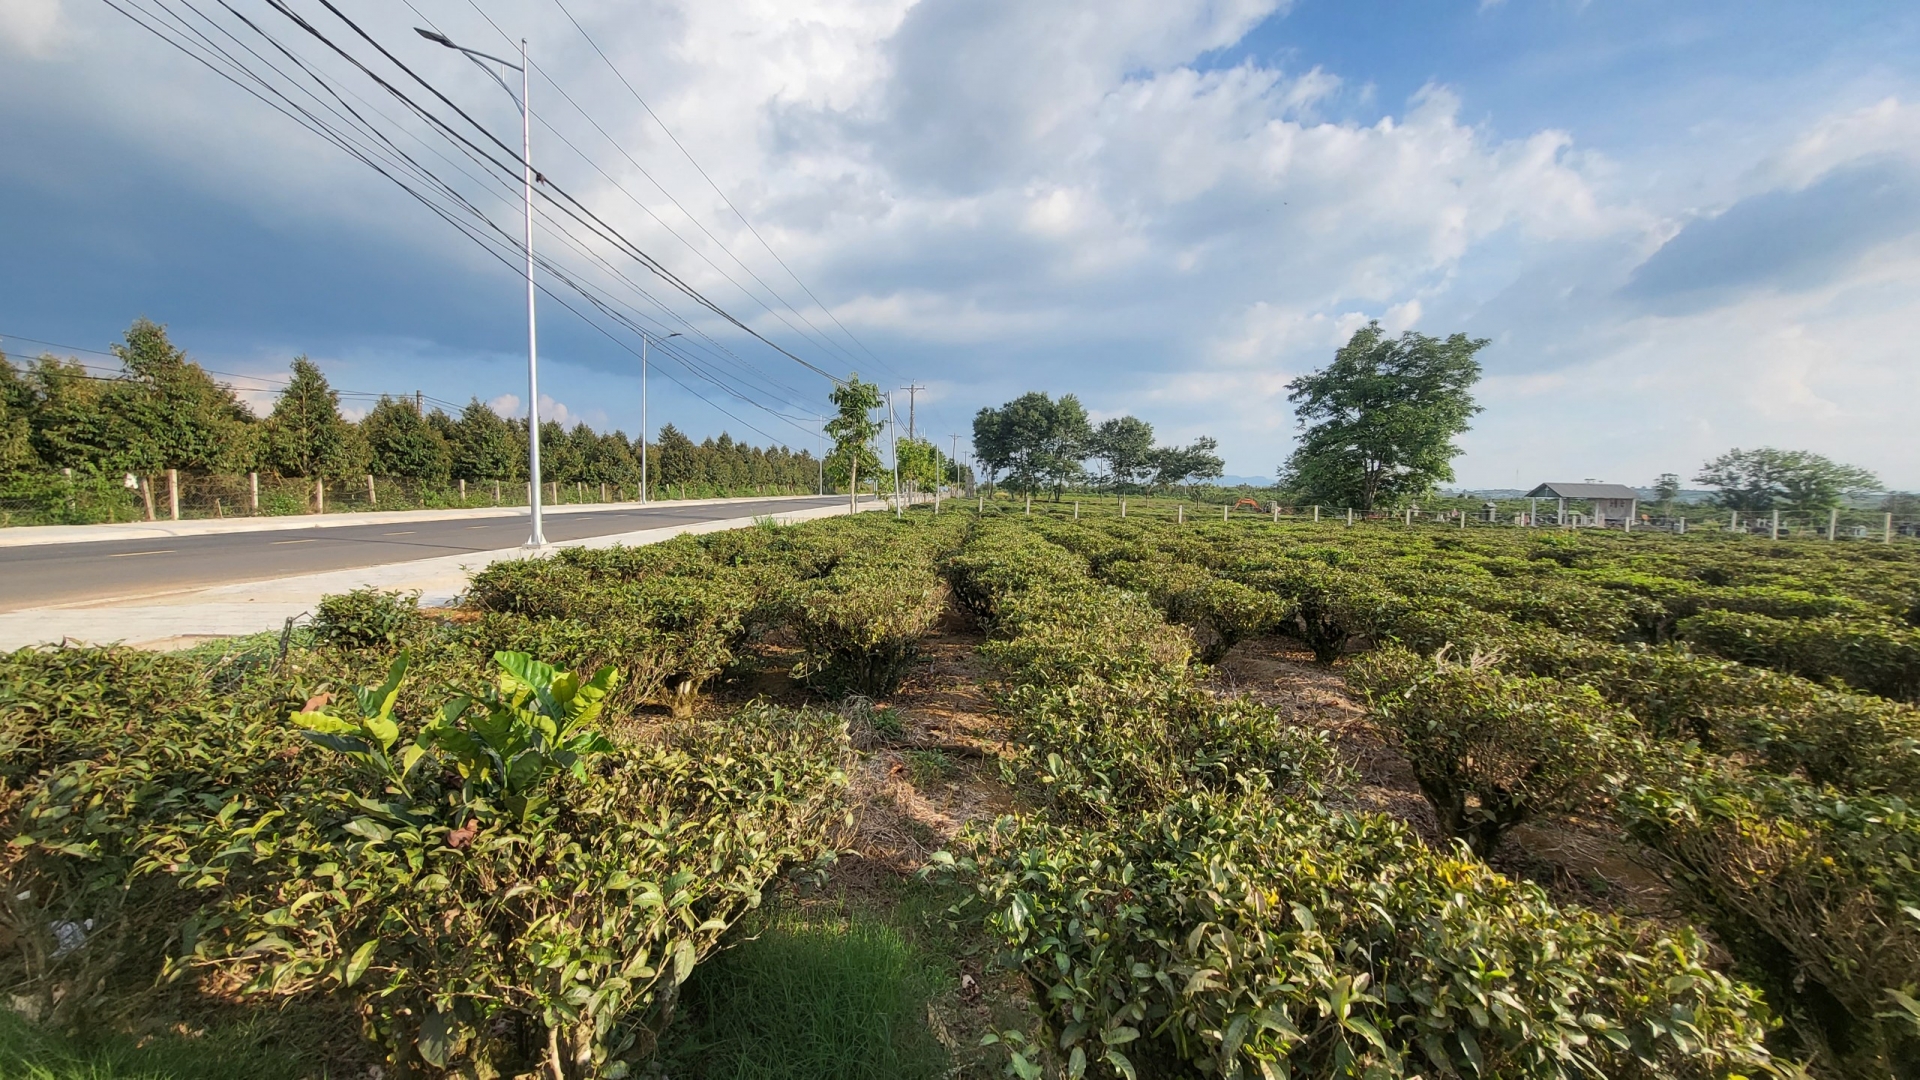 Để tránh tình trạng biến đất công thành đất tư không đúng quy định, Trang tra tỉnh Lâm Đồng kiến nghị UBND tỉnh Lâm Đồng tạm dừng xem xét chuyển nhượng giá trị vường cây và cấp giấy CNQSD đất tại các công ty chè chờ hướng dẫn của các bộ, ngành trung ương